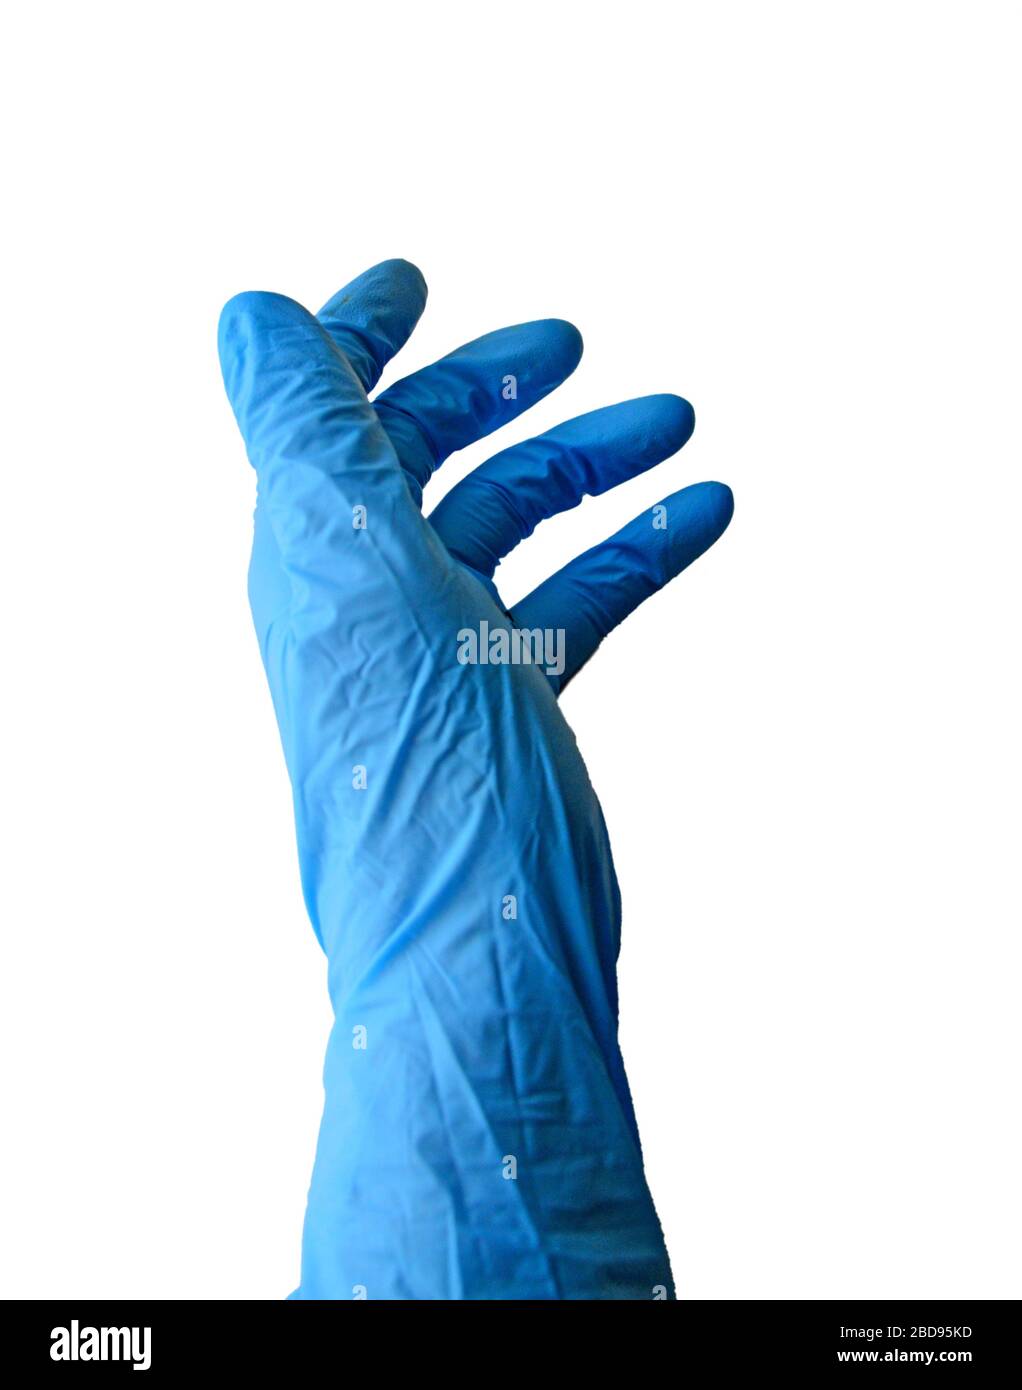 Mano con guante azul quirúrgico de látex. Foto de stock